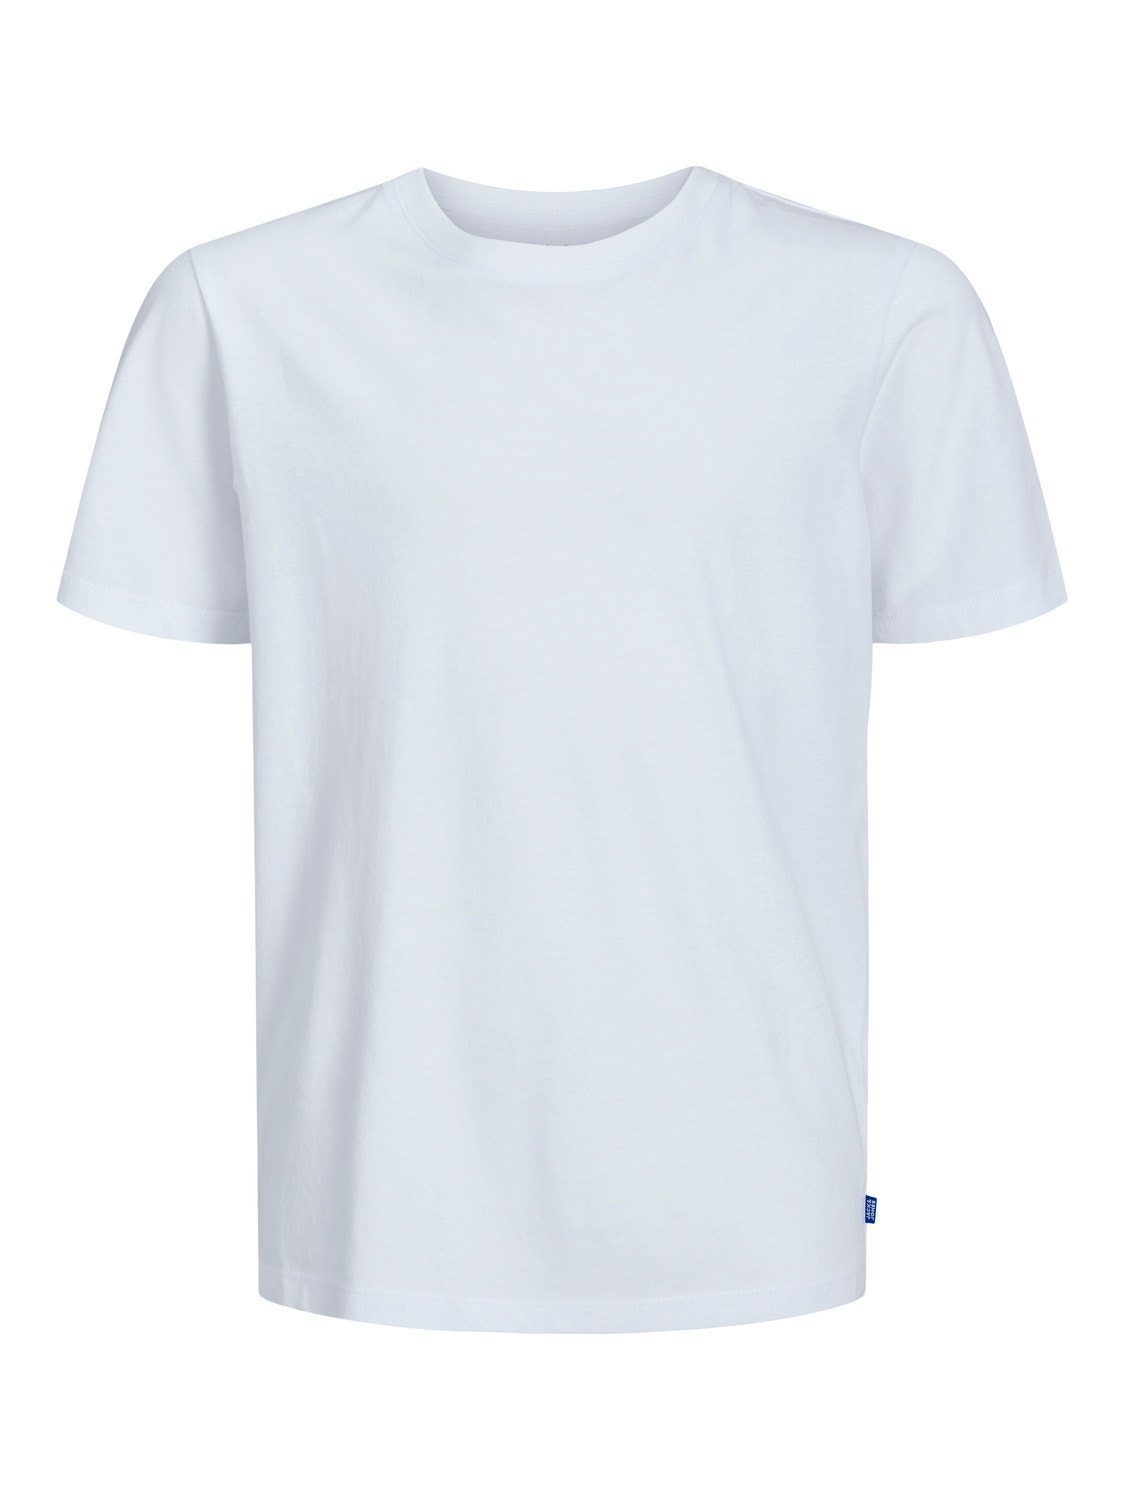 Jack & Jones Plain T-shirt Mini -White - 12257380